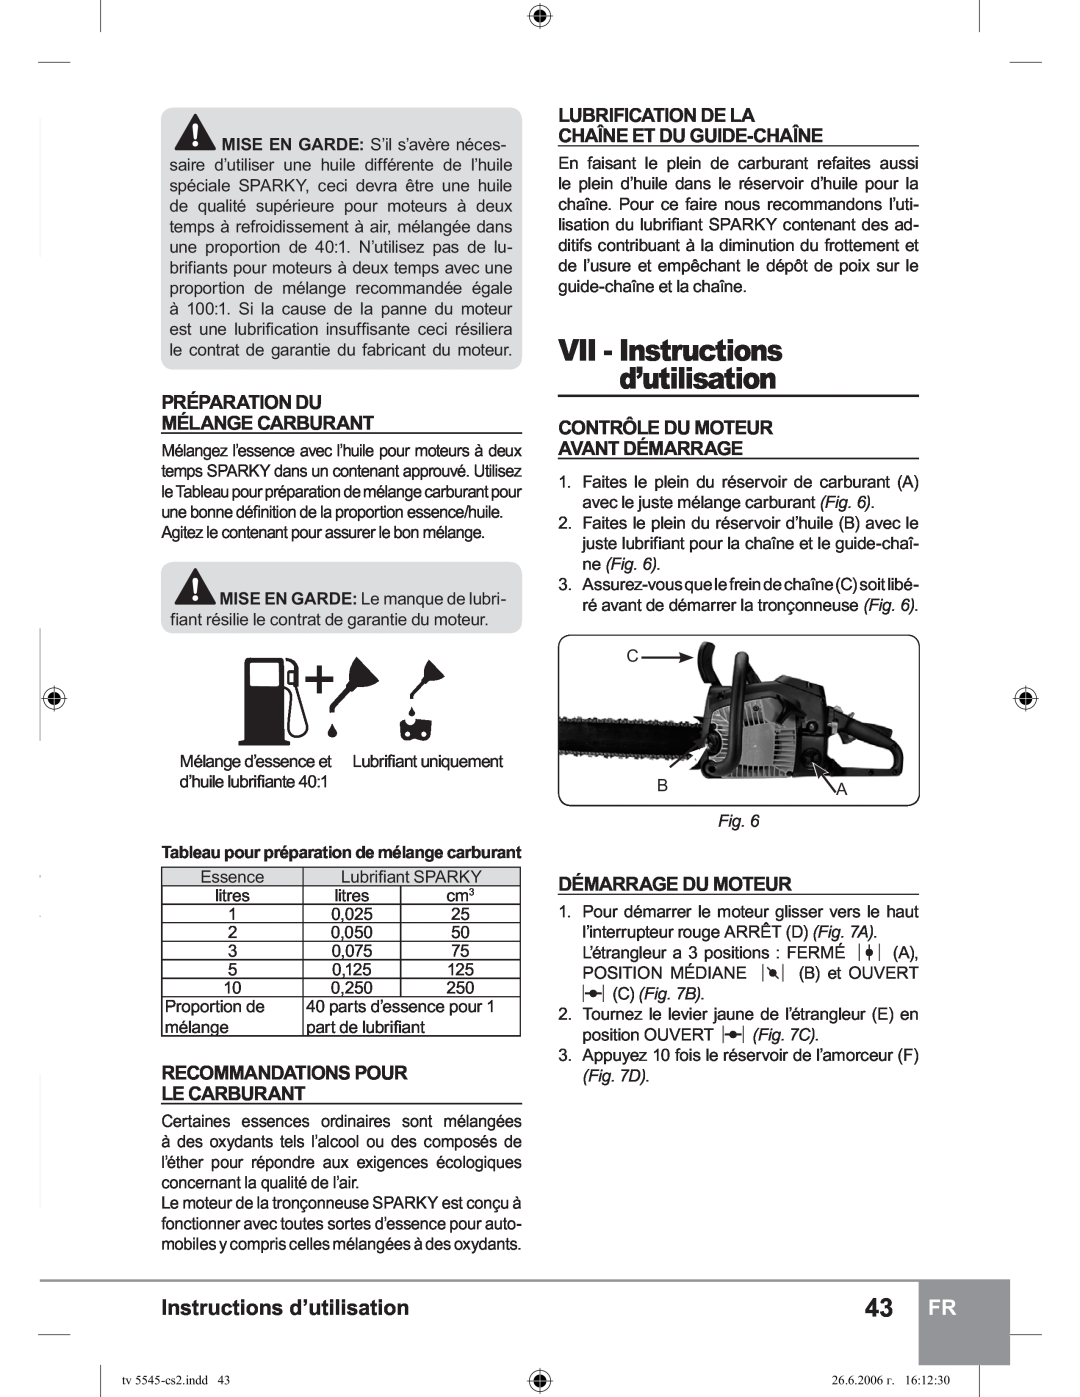 Sparky Group TV 5545 VII - Instructions d’utilisation, Préparation Du Mélange Carburant, Recommandations Pour Le Carburant 